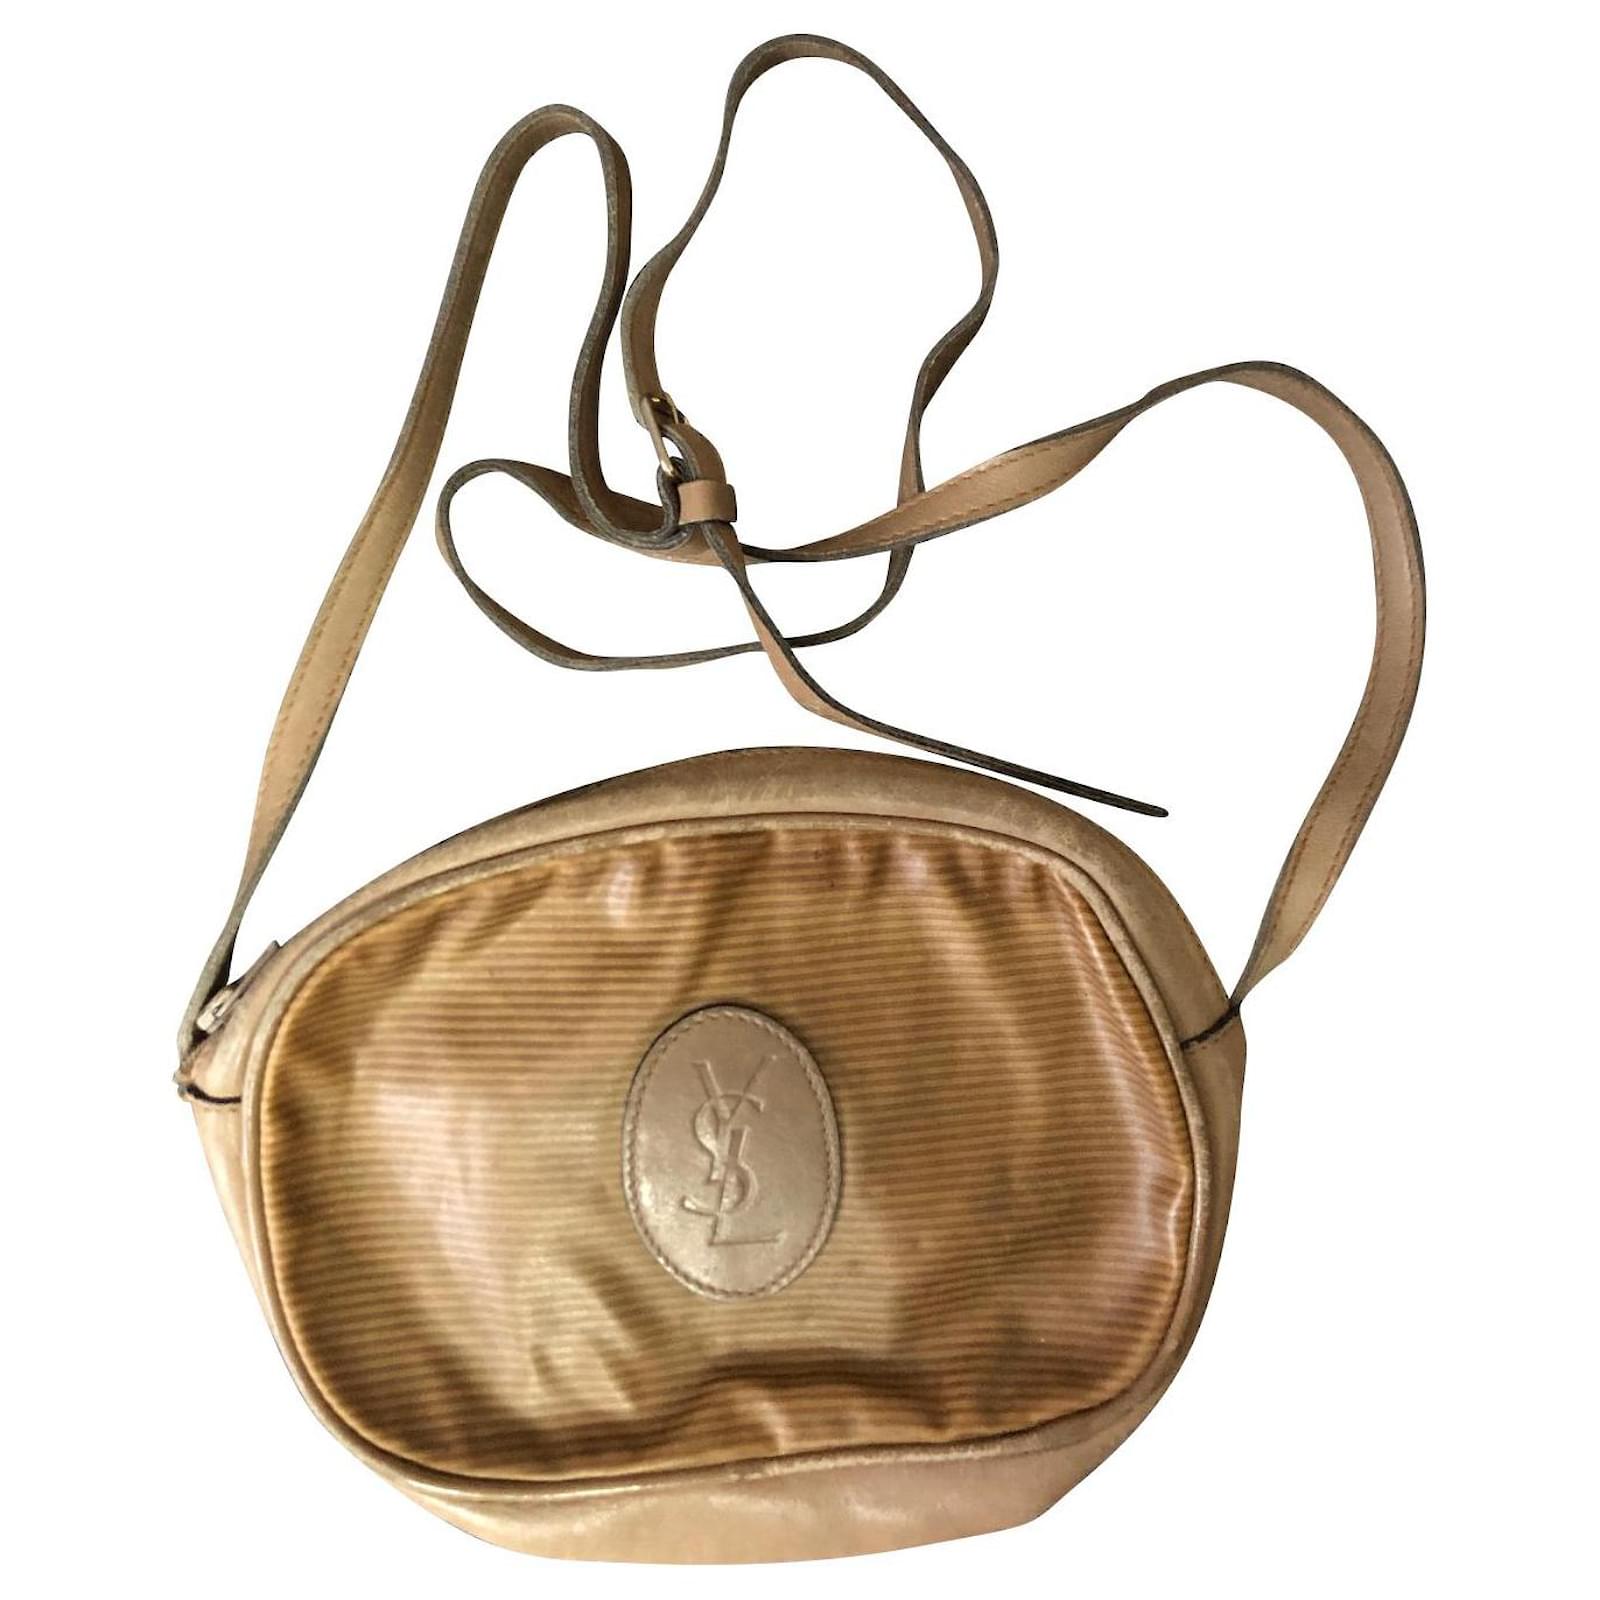 Yves Saint Laurent, Bags, Original Ysl Bag